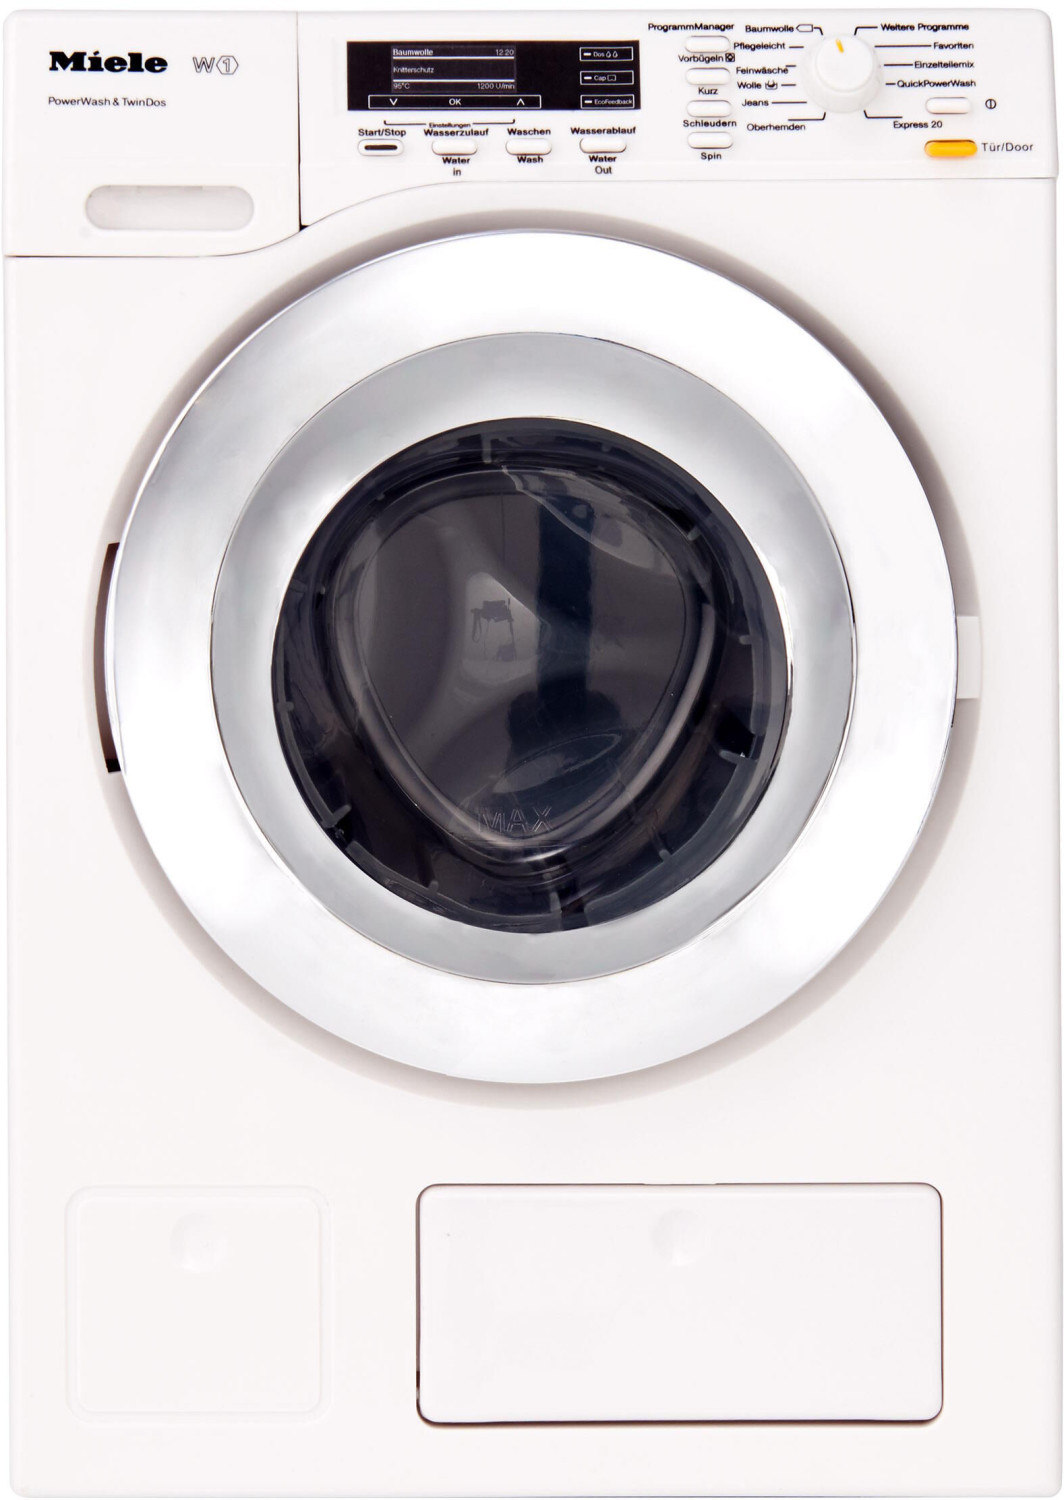 Waschmaschine 2024 ab 36,39 klein (6941) (Februar toys bei | Spielzeug Miele Preisvergleich € Preise)